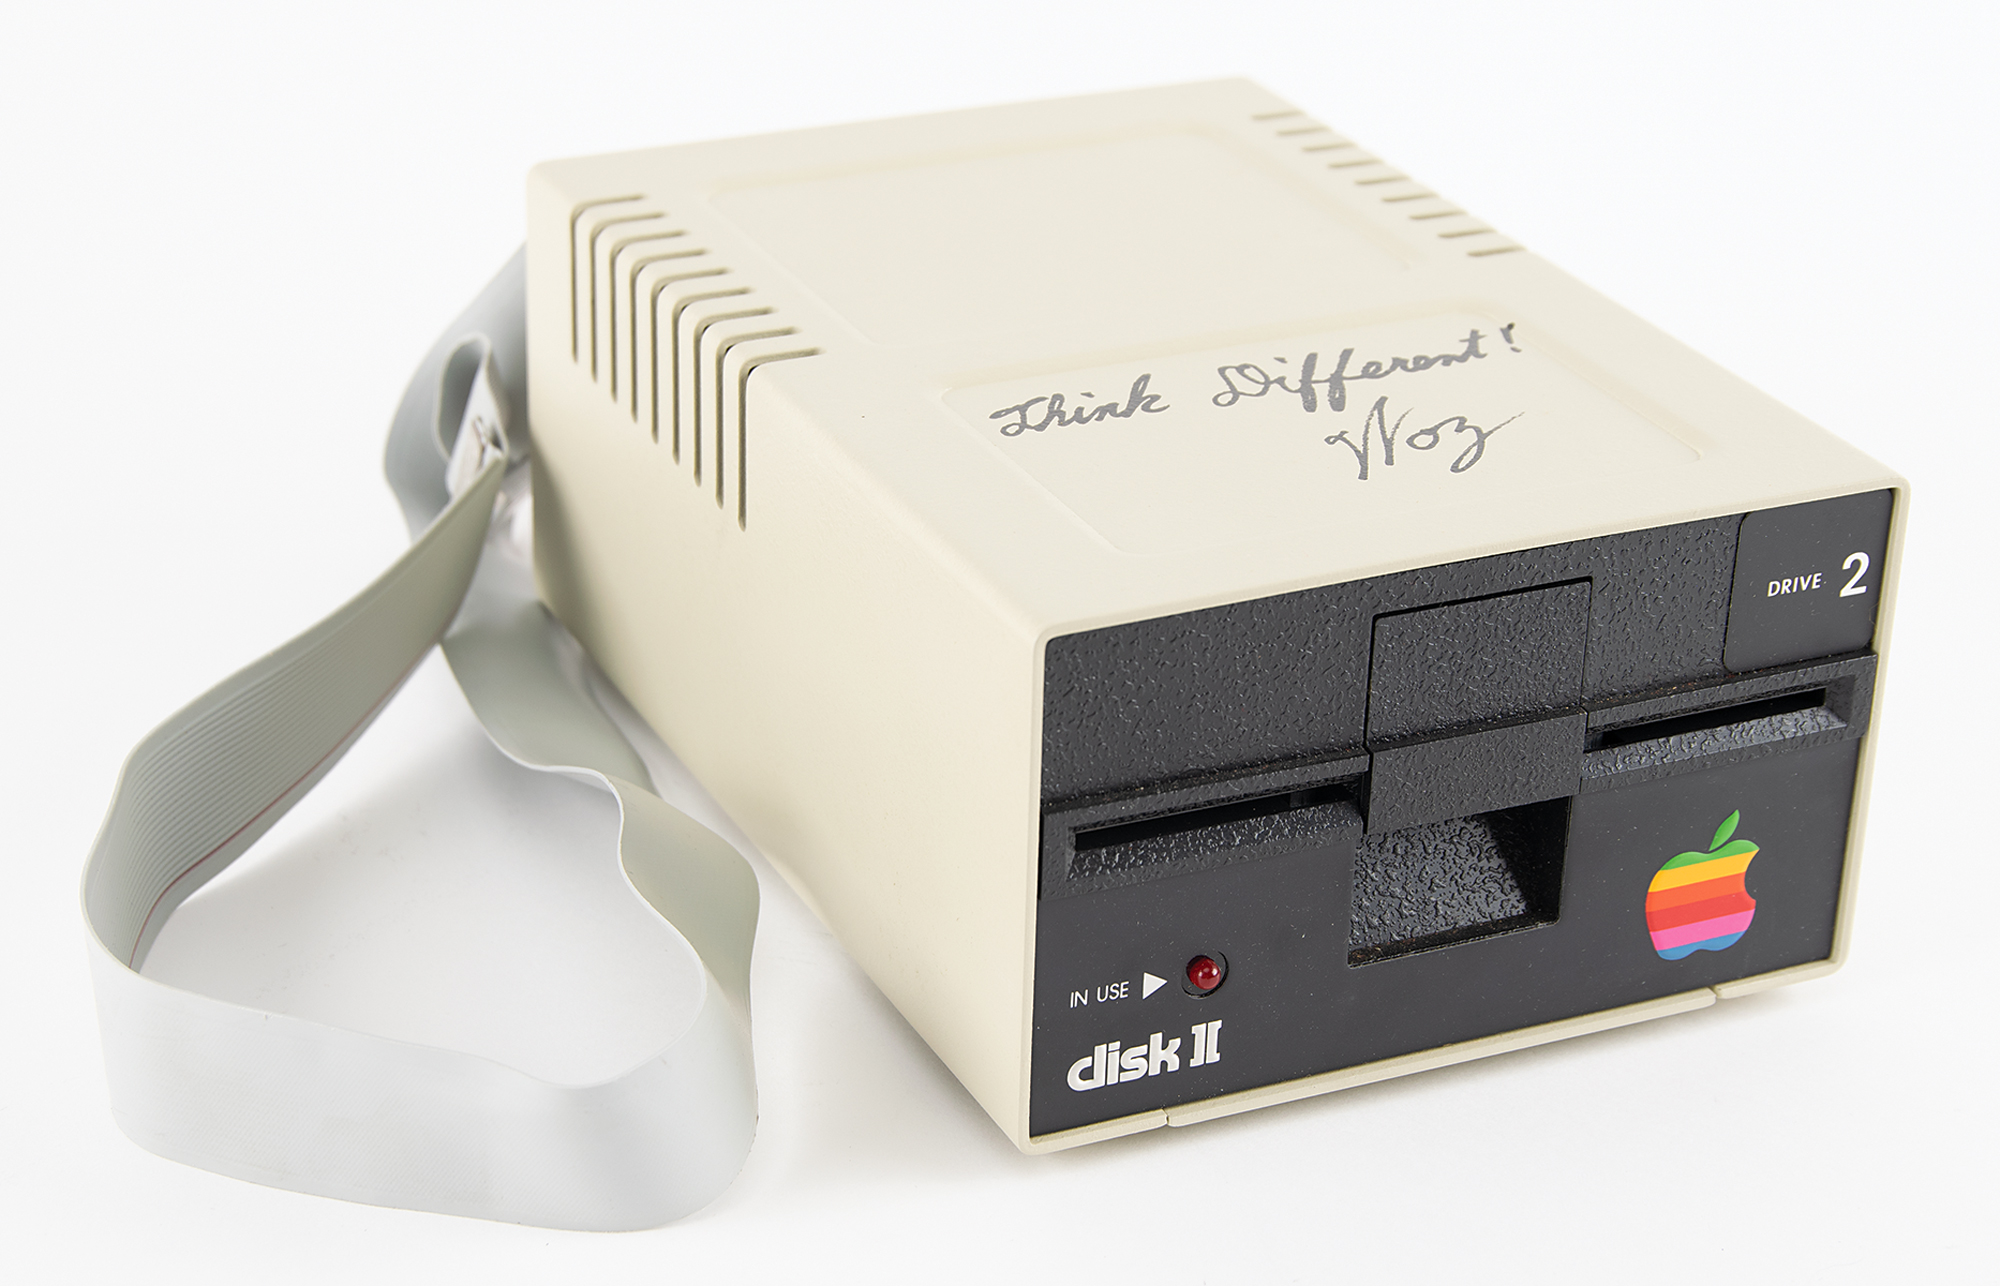 Steve Wozniak Signed Apple Ii Floppy Disk Drive Rr Auction